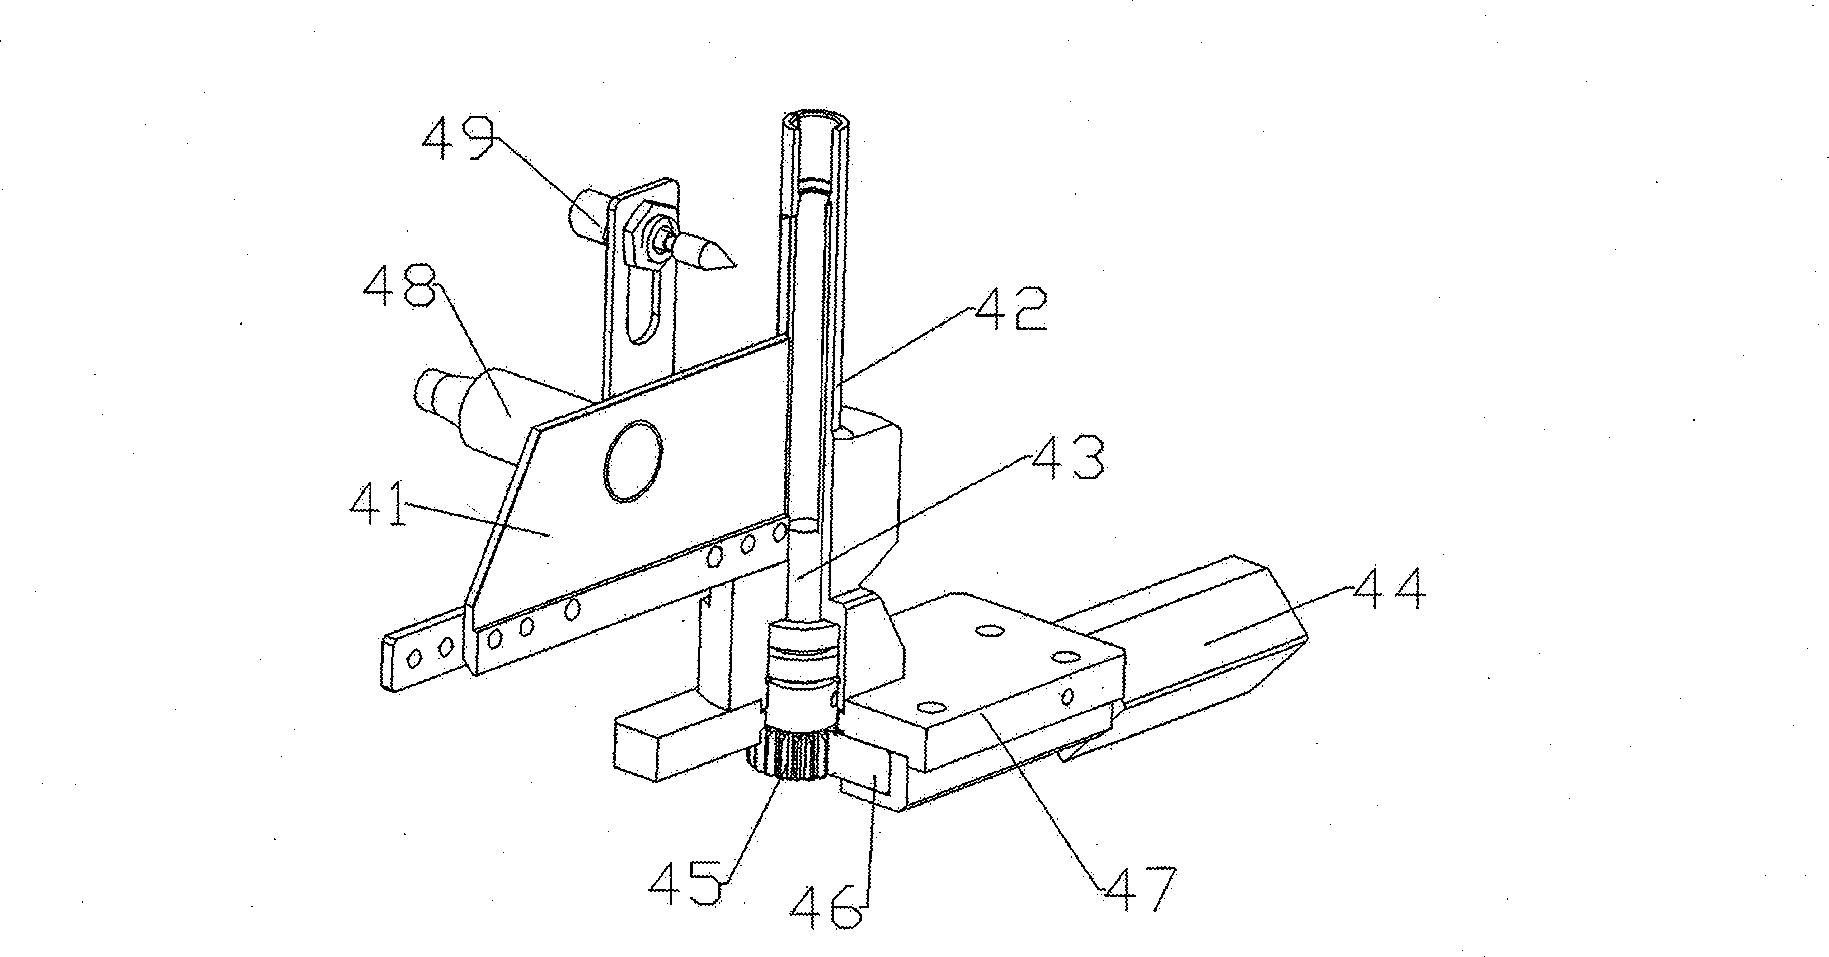 Automatic rivet pulling mechanism